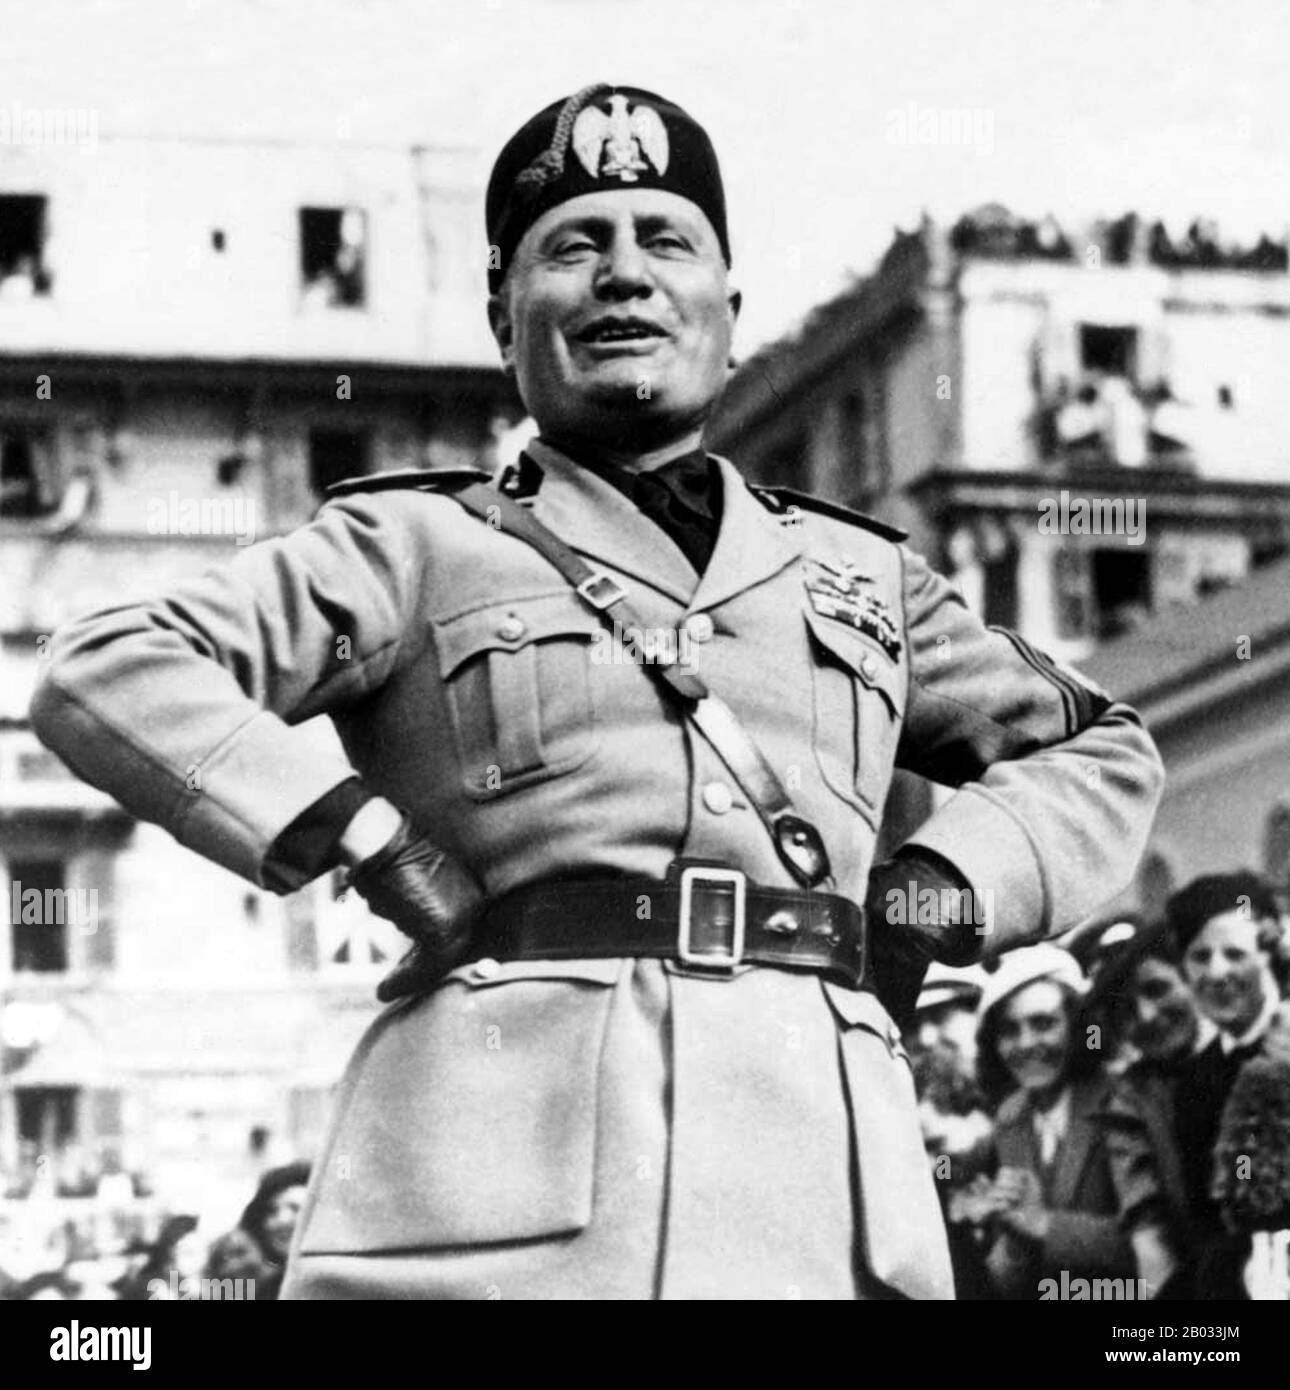 Benito Amilcare Andrea Mussolini (29. Juli 1883 - 28. April 1945) war ein italienischer Politiker, Journalist und Führer der nationalen Faschistenpartei, der das Land von 1922 bis zum Sturz 1943 als Premierminister regierte. Verfassungsrechtlich regierte er bis 1925, als er alle Vorhaltungen der Demokratie fallen ließ und eine Rechtsdiktatur einrichtete. Als Il Duce ("Der Führer") bekannt, war Mussolini der Gründer des Faschismus. Stockfoto